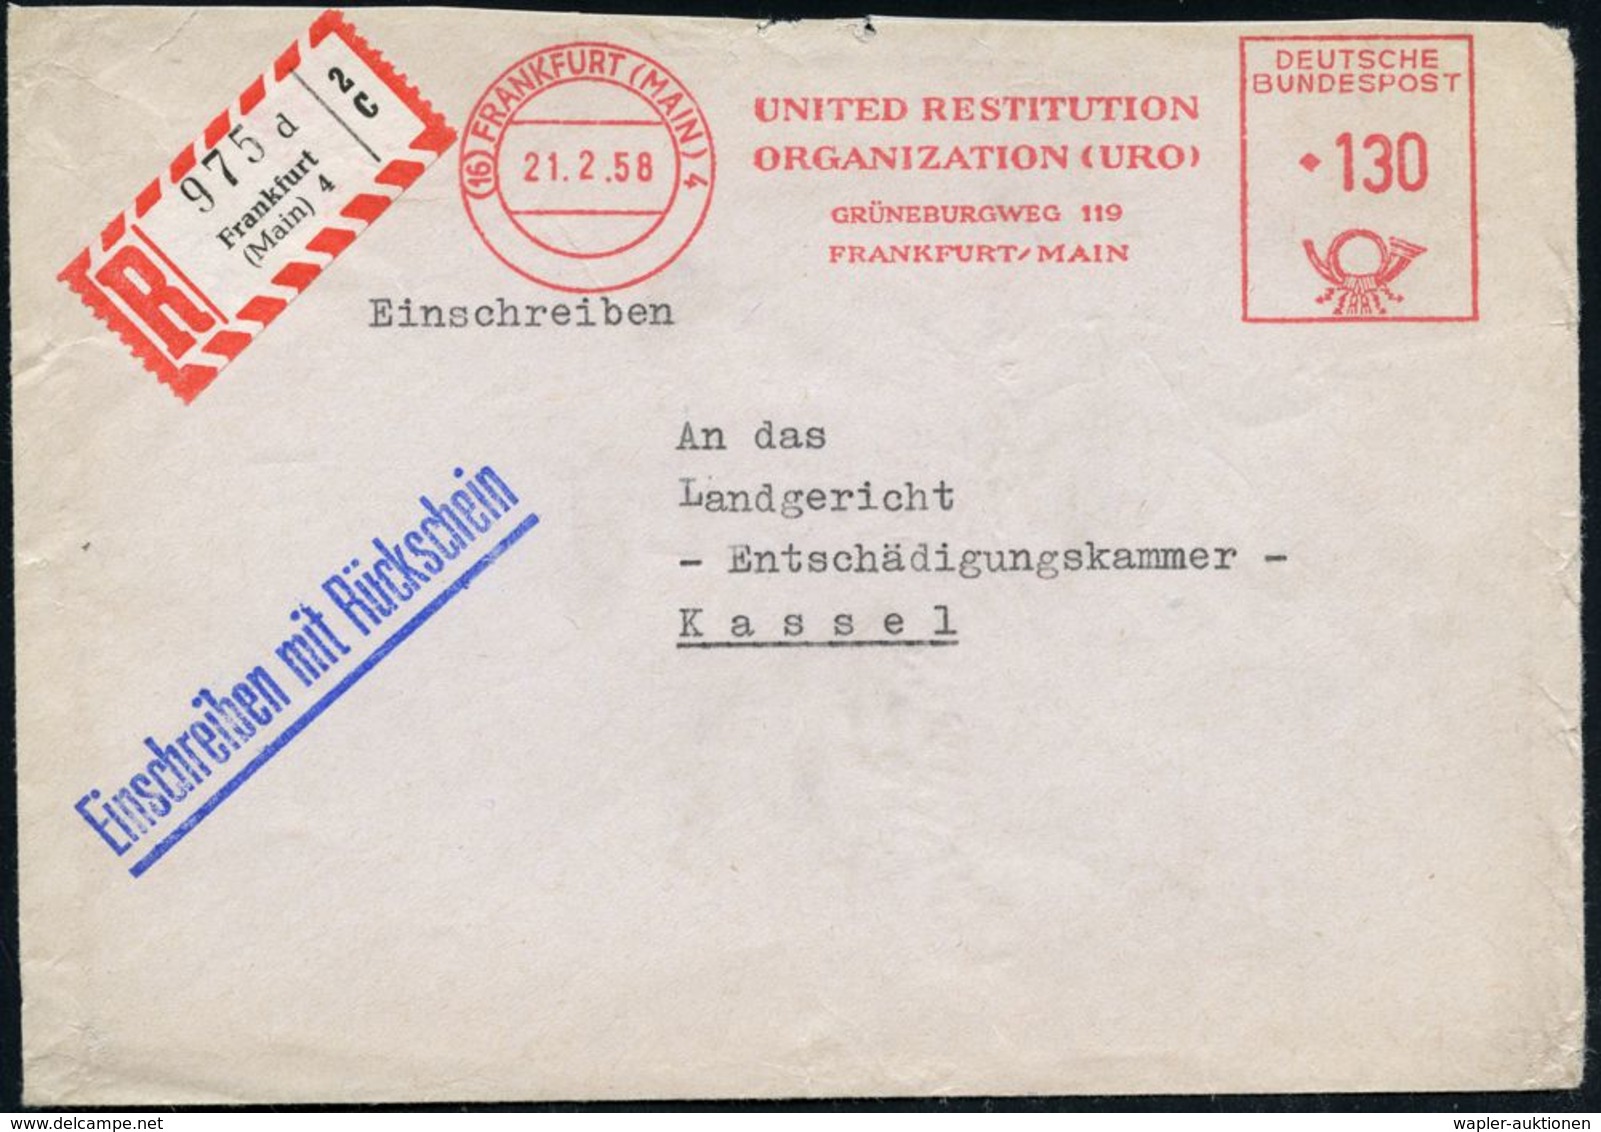 (16) FRANKFURT (MAIN)4/ UNITED RESTITUTION/ ORGANIZATION (URO).. 1958 (21.2.) AFS 130 Pf. + RZ: Frankfurt/(Main) 4/d (ob - Judaisme